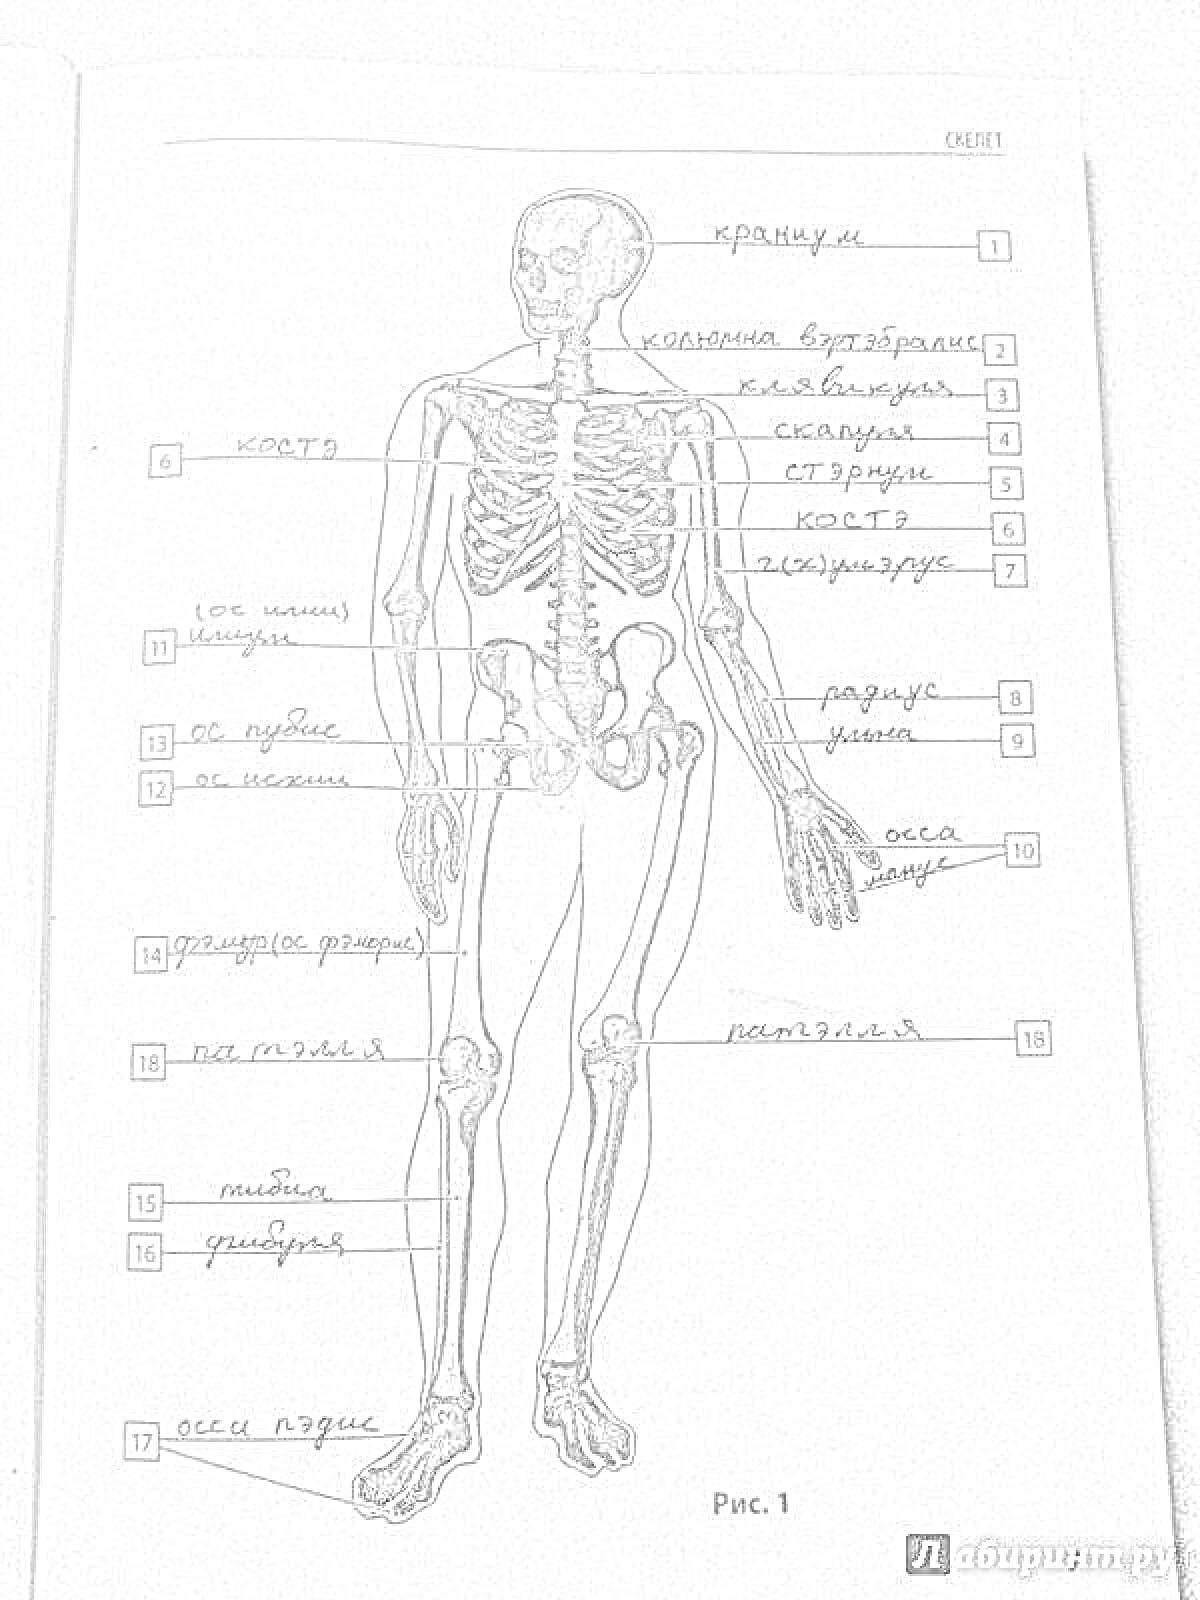 Раскраска Скелет человека с аннотациями. Все элементы: череп, ключица, грудина, ребра, позвоночник, кость плеча, локтевая кость, локоть, кость предплечья, кости запястья, таз, бедренная кость, надколенник, колено, большеберцовая кость, малоберцовая кость, кости сту